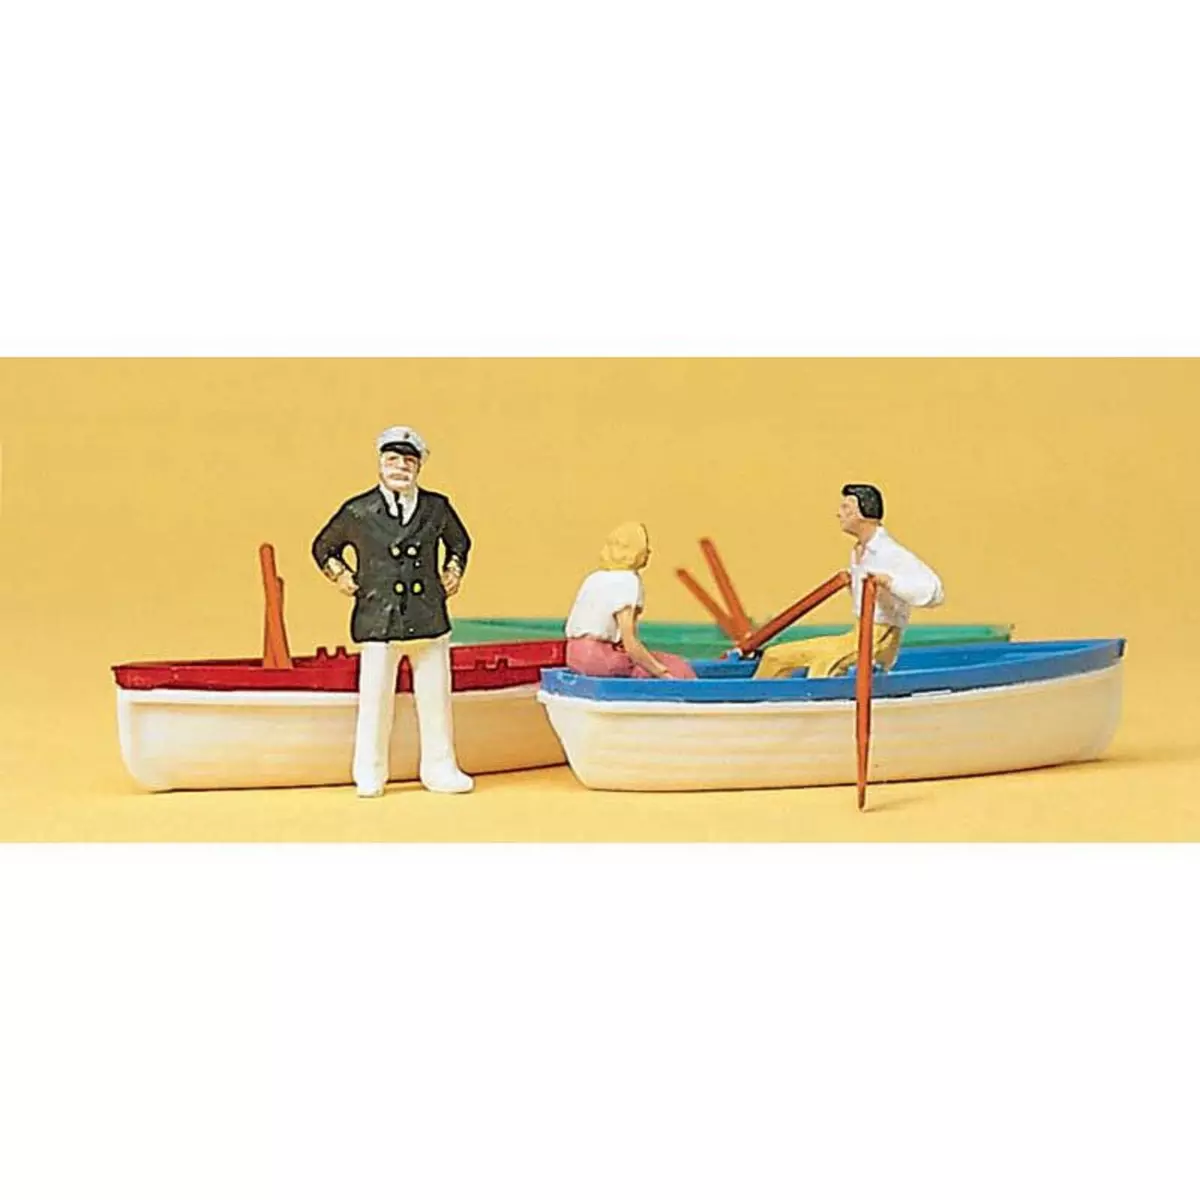 Preiser 1/87 Ème Modélisme HO Figurines : Location de bateaux